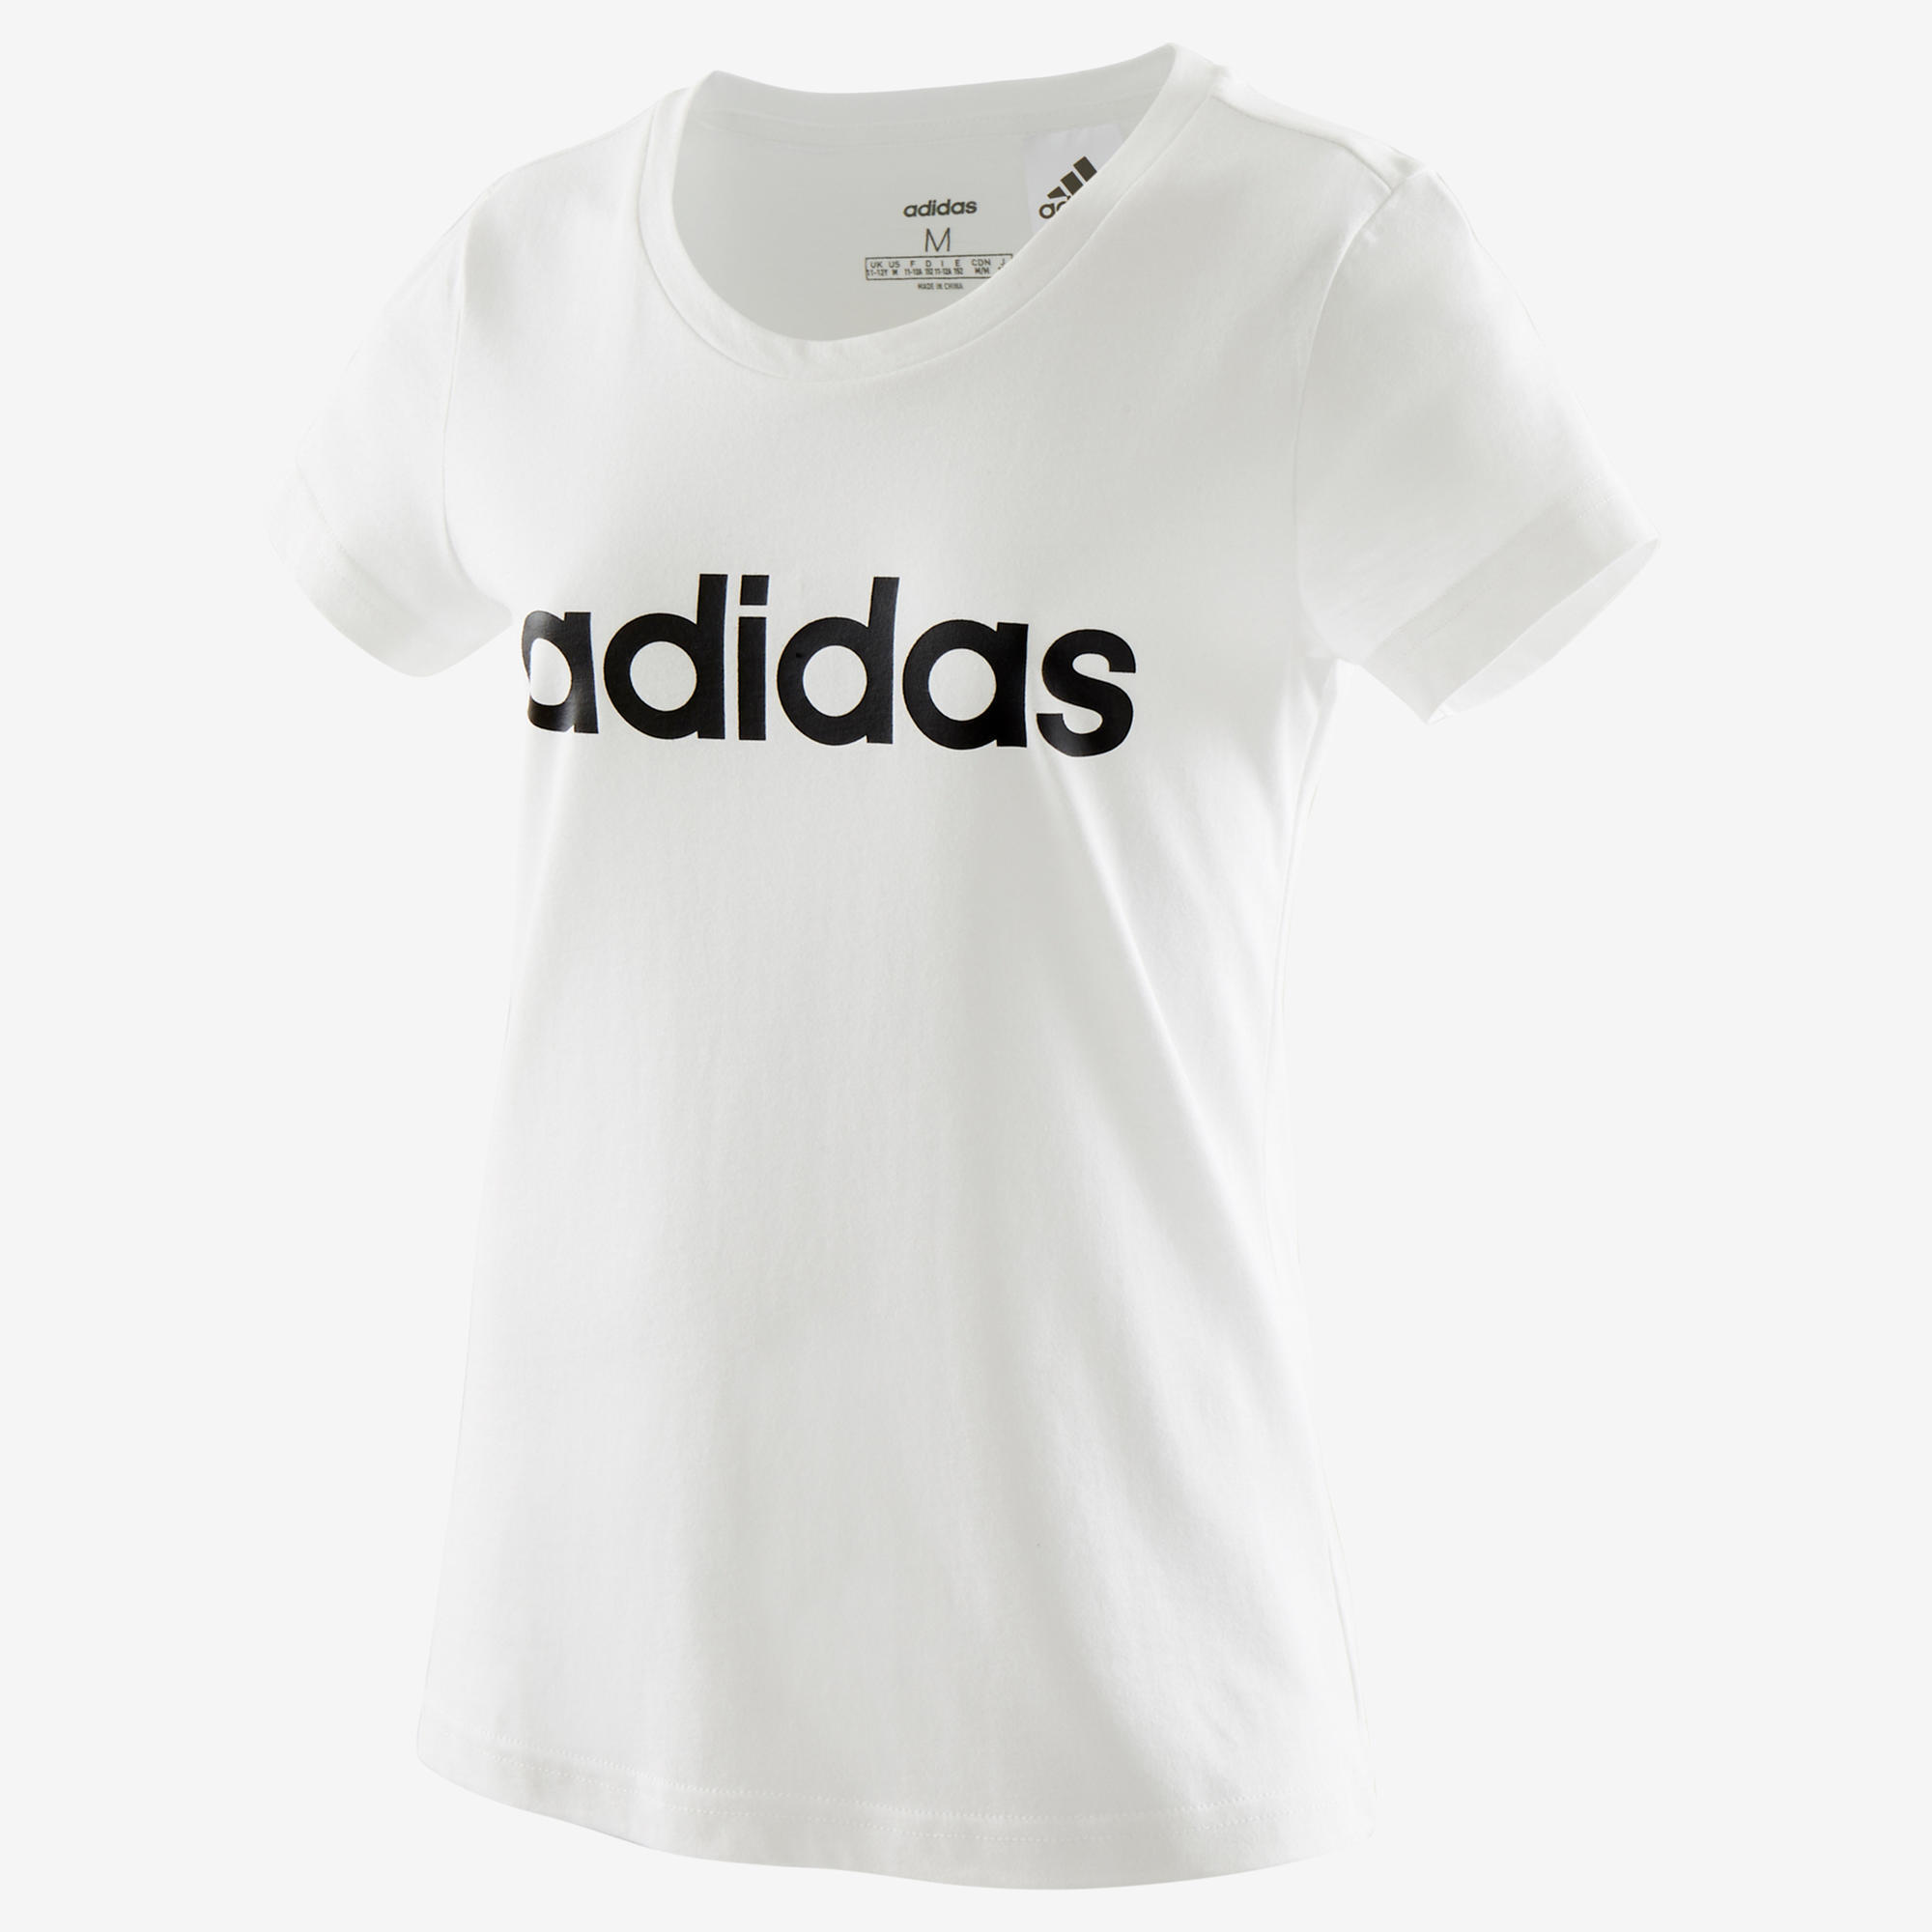 Camiseta manga corta niña adidas blanco negro ADIDAS | Black Friday  Decathlon 2020